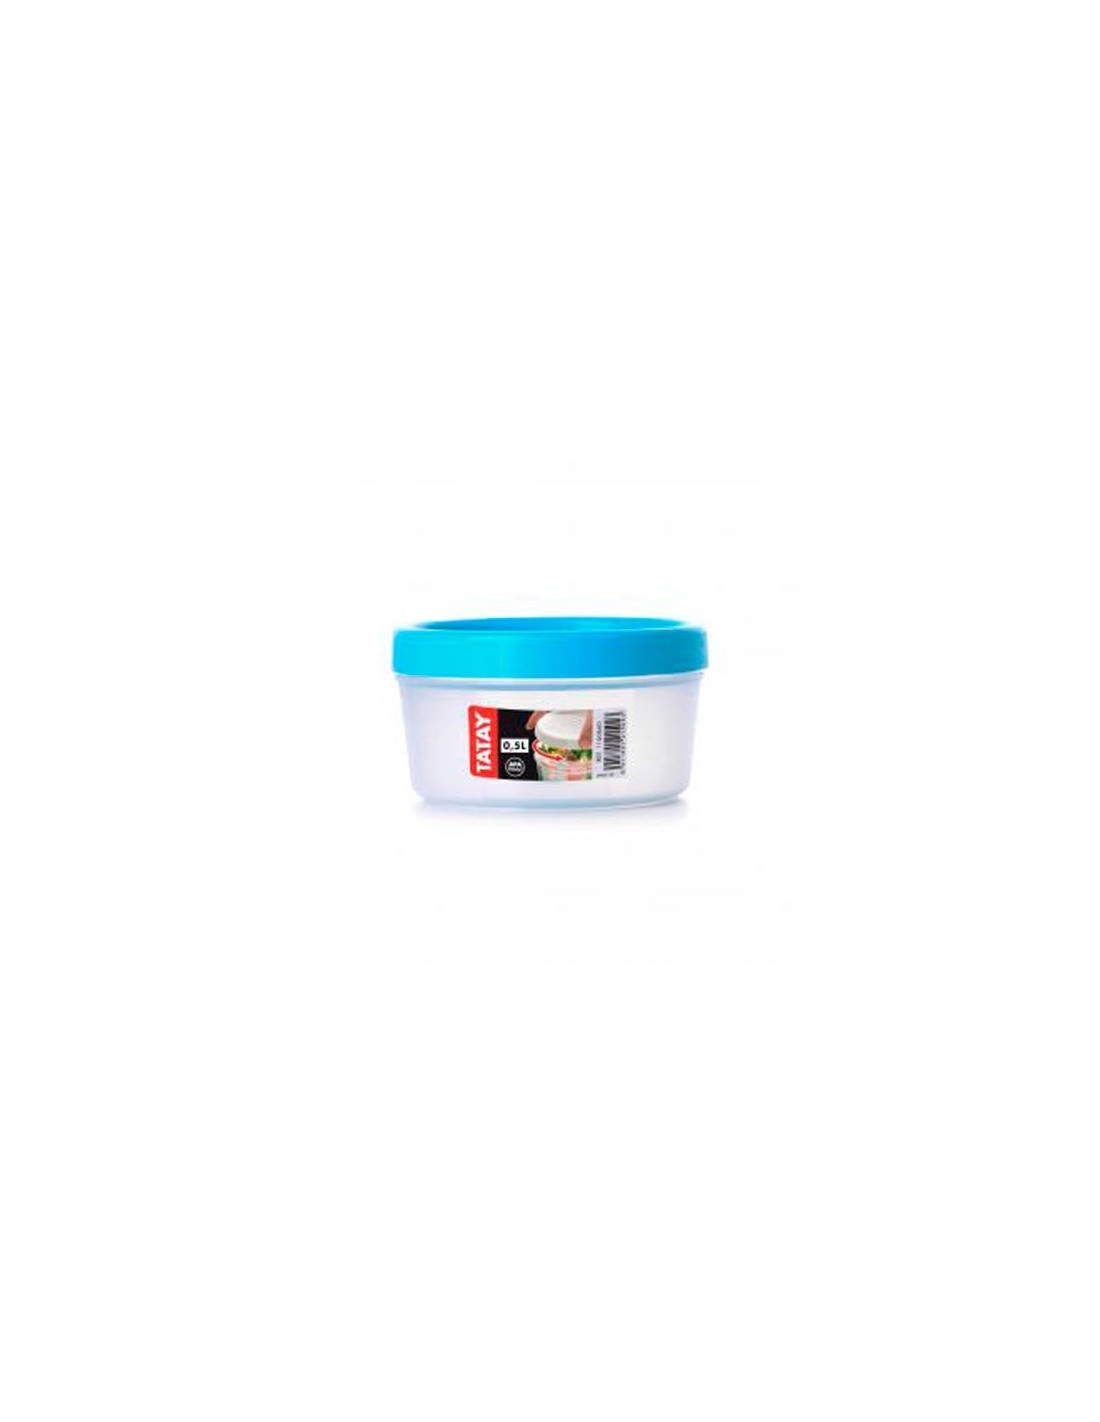 Tatay Recipiente para alimentos ovalado de plástico transparente con tapa  color azul, tatay 0,5 litros